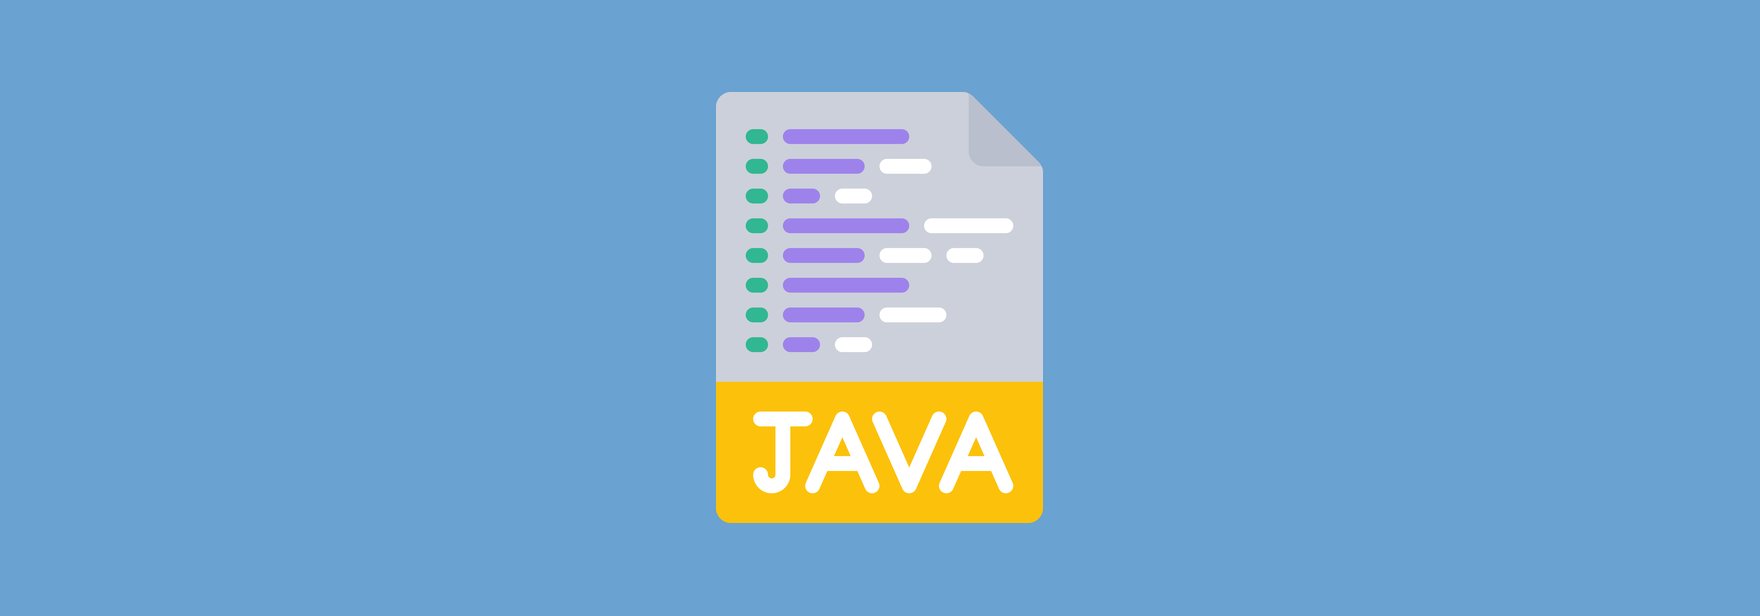 Современные требования к Java-разработчику: о чём вас спросят на собеседовании